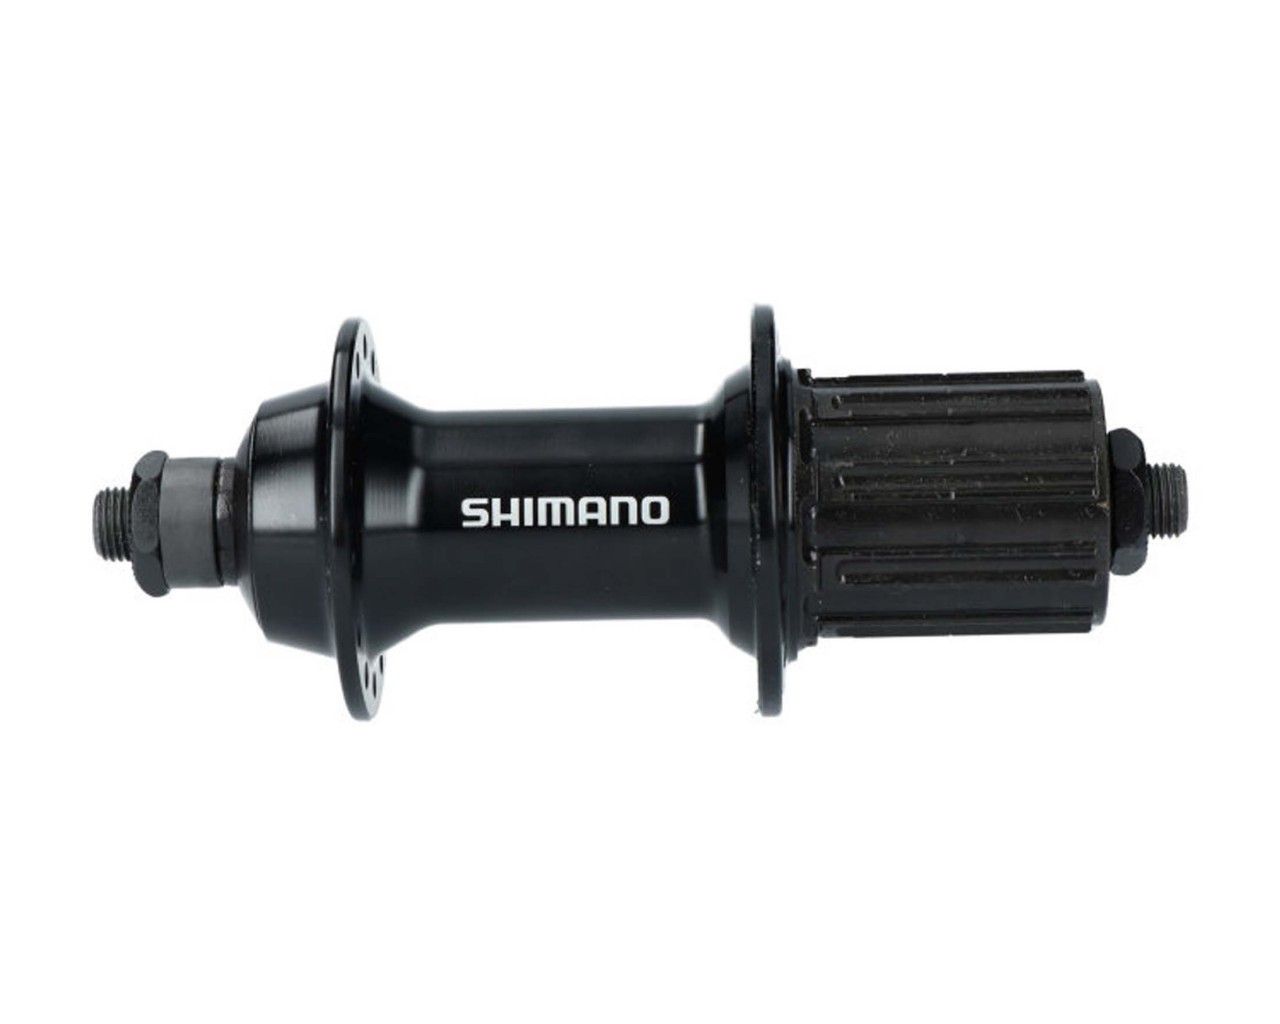 Shimano Hinterradnabe Road FH-RS400 10/11-fach - Schnellspanner 168 mm | schwarz